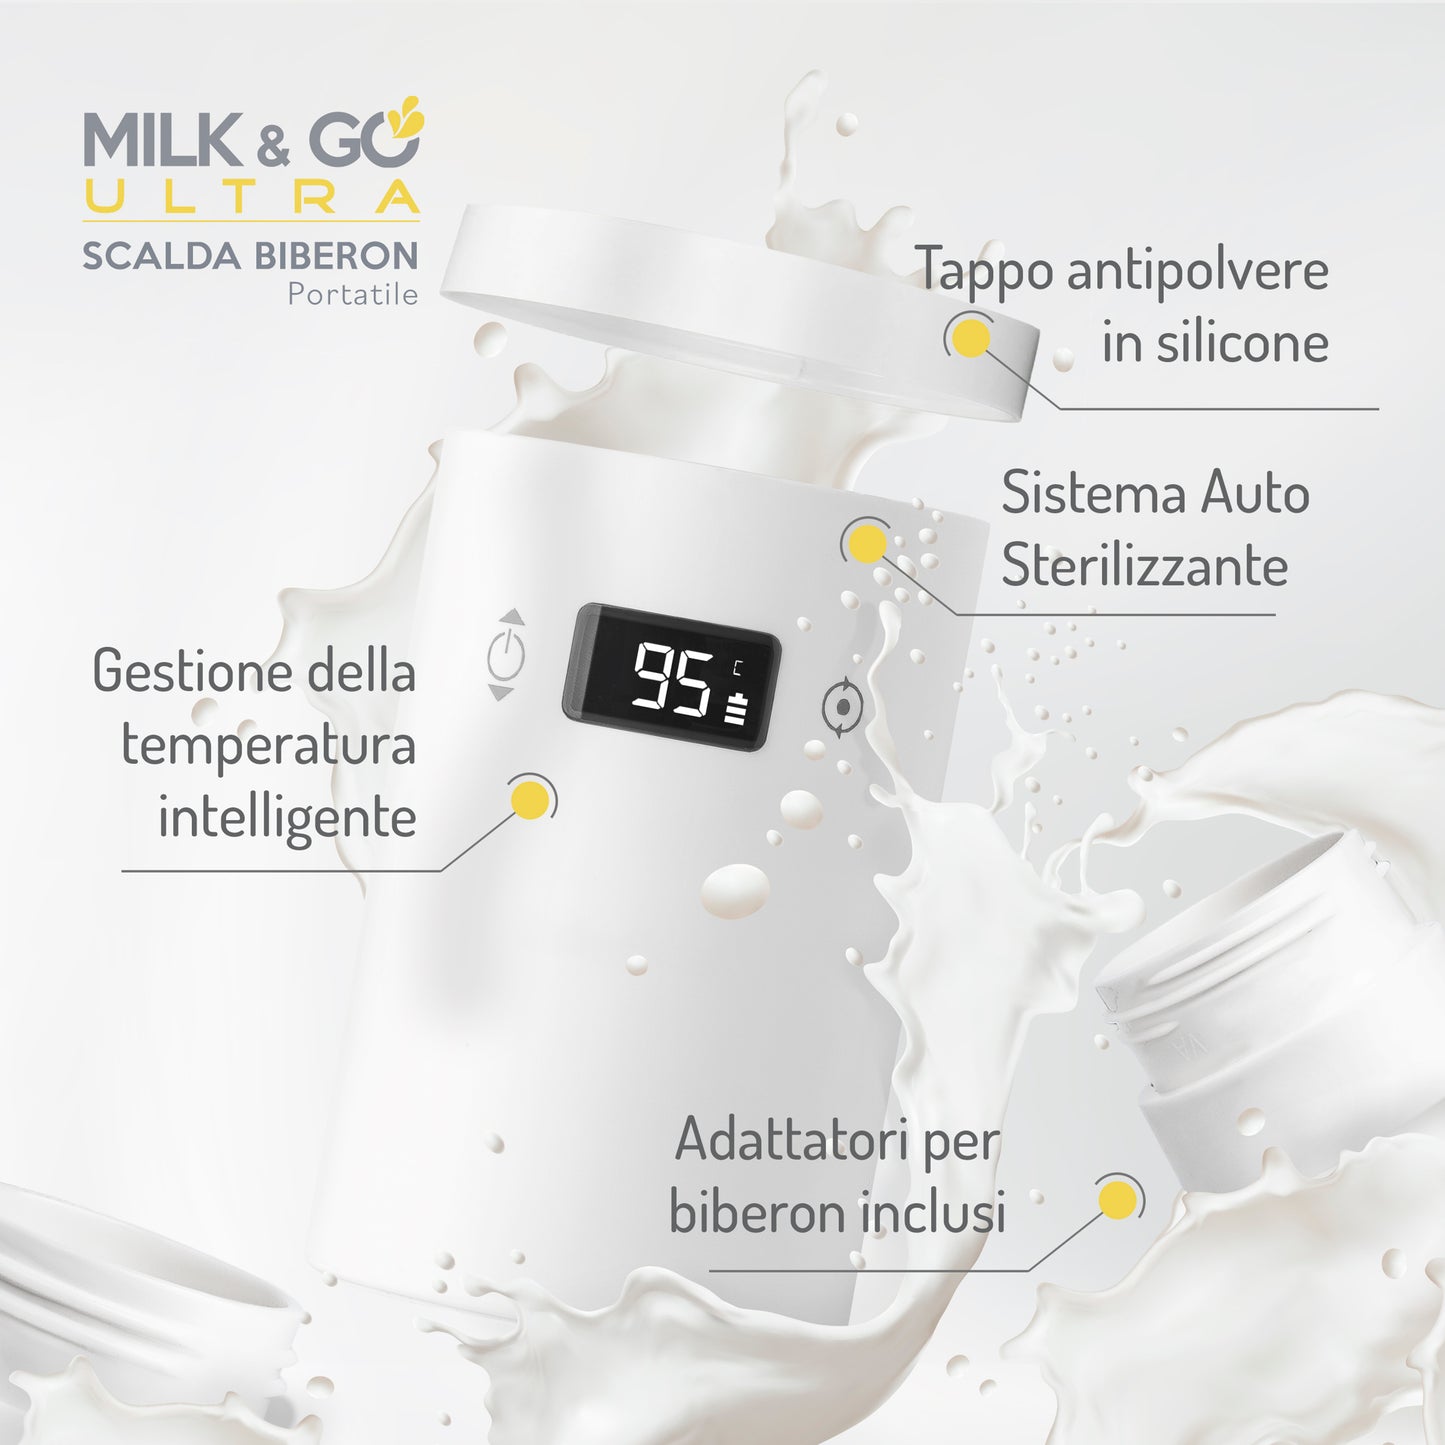 DAHEMA - Milk & Go ULTRA - Scaldabiberon Portatile da Viaggio con Boccia Termos Integrata - Auto-Sterilizzante. Ricaricabile a Casa, in Auto e con Power Bank.